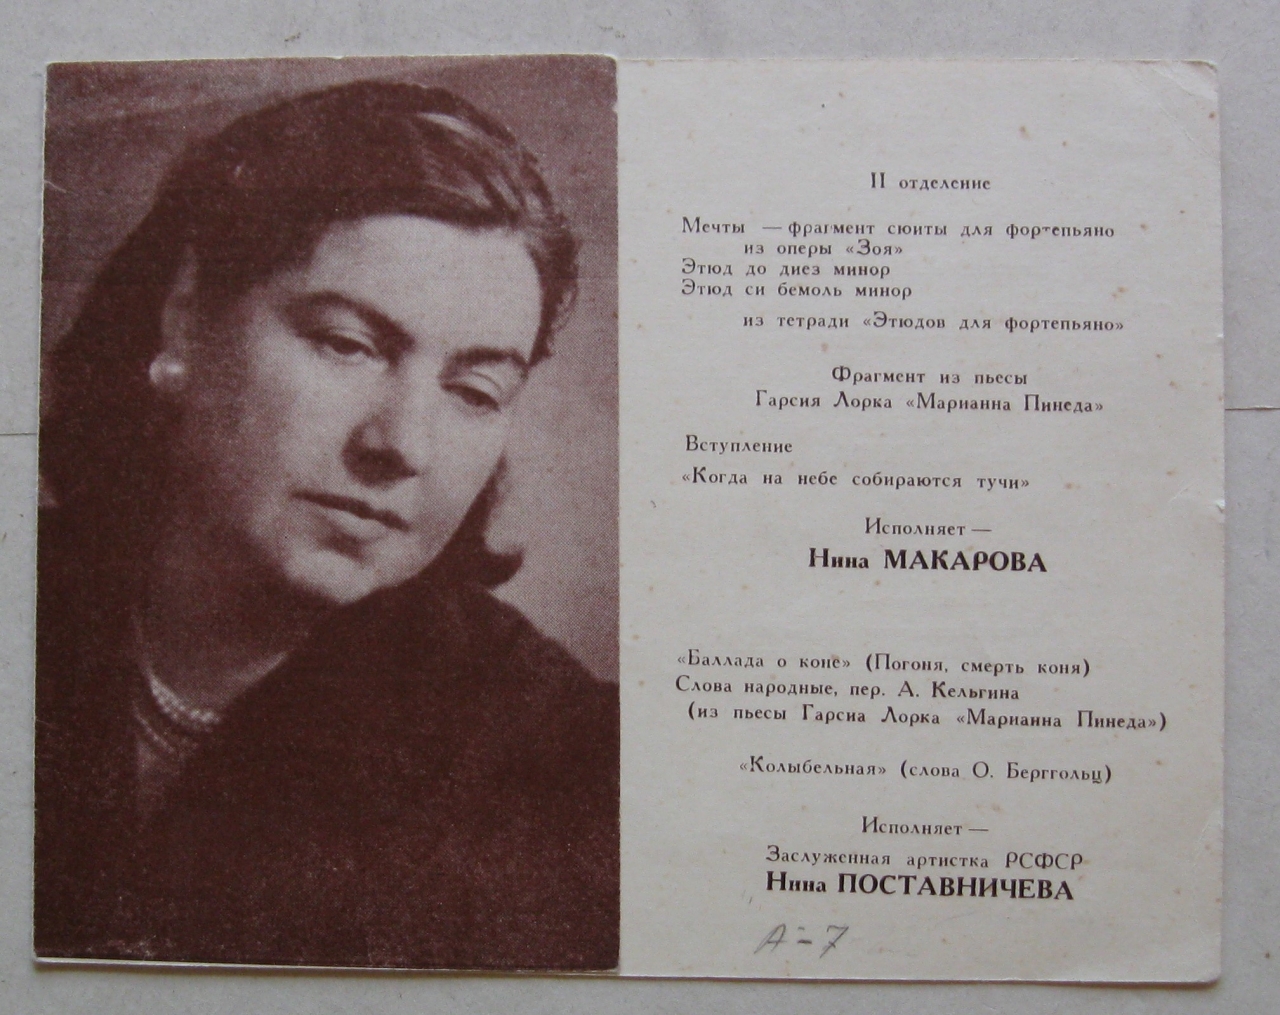 Հրավիրատոմս՝ Նինա Մակարովայի (Արամ Խաչատրյանի կինը) հեղինակային երեկոյի. Համամիութենական կոմպոզիտորների տան համերգային դահլիճ, Մոսկվա, 2 դեկտեմբերի, 1967 թ.: